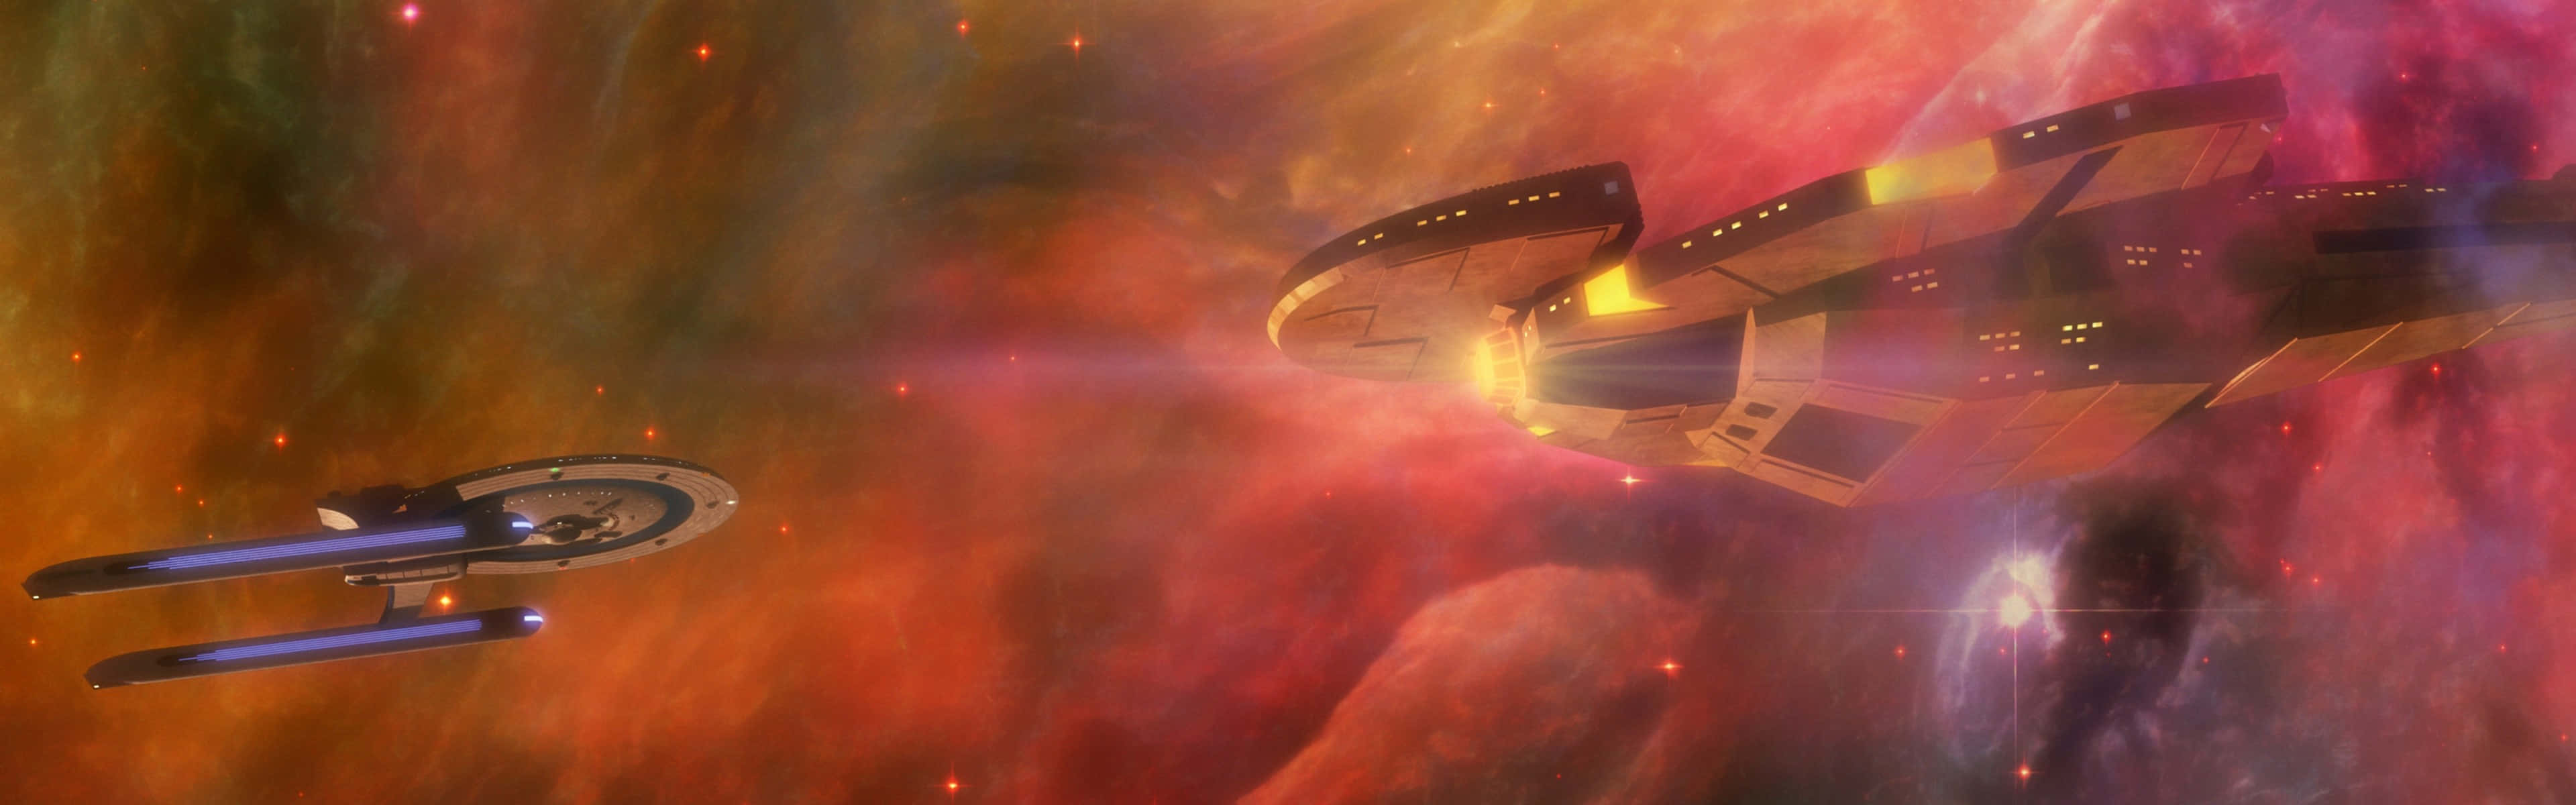 Loggensie Sich In Die Final Frontier Mit Einem Star Trek Zoom-hintergrund Ein!